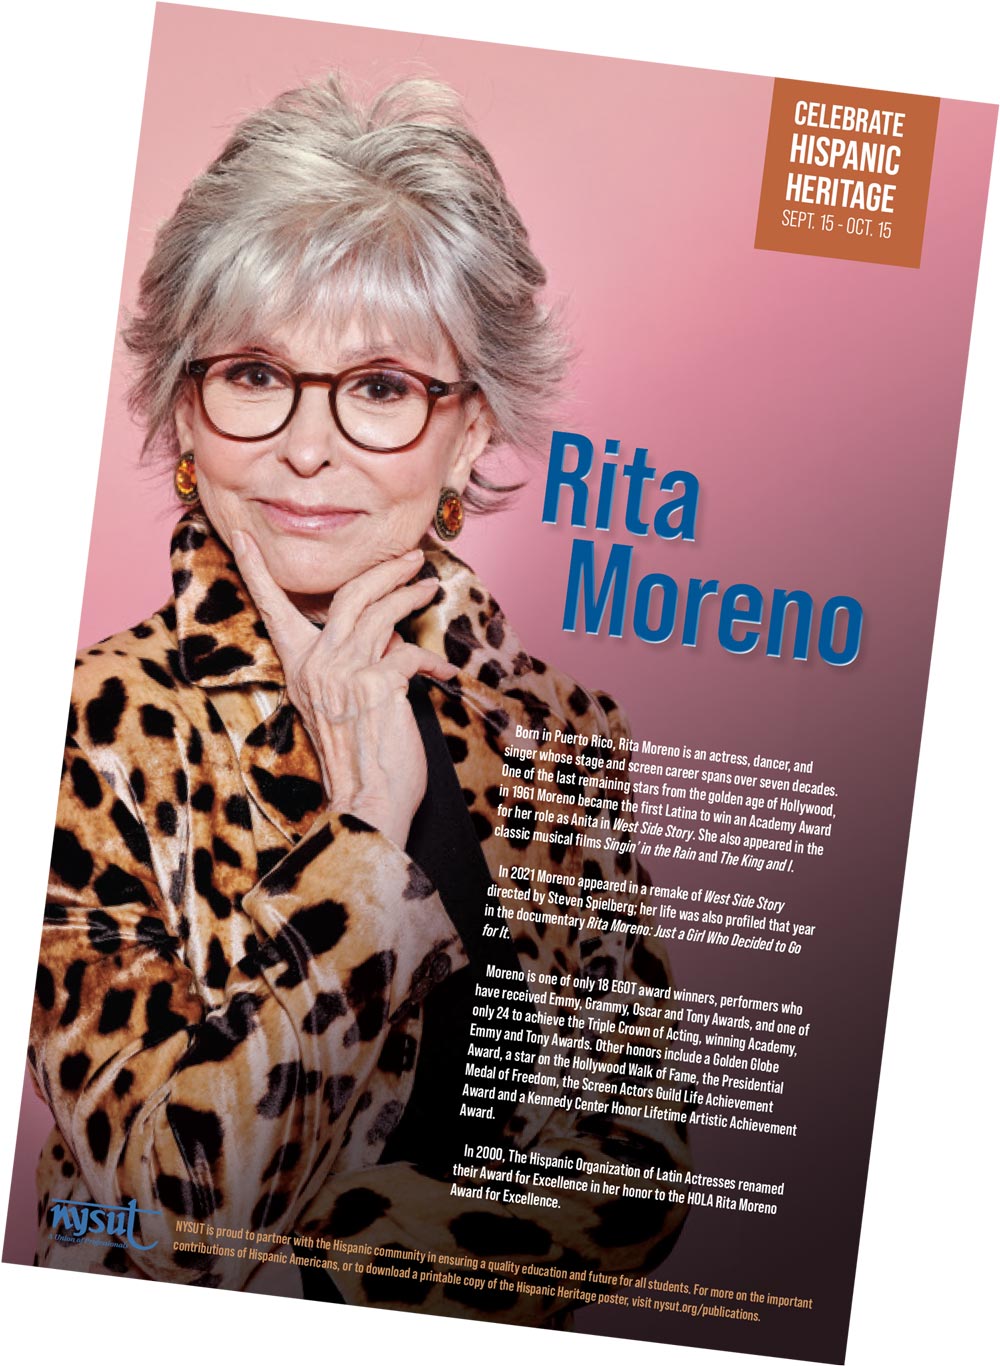 actress Rita Moreno on an NYSUT poster celebrating Hispanic Heritage Month